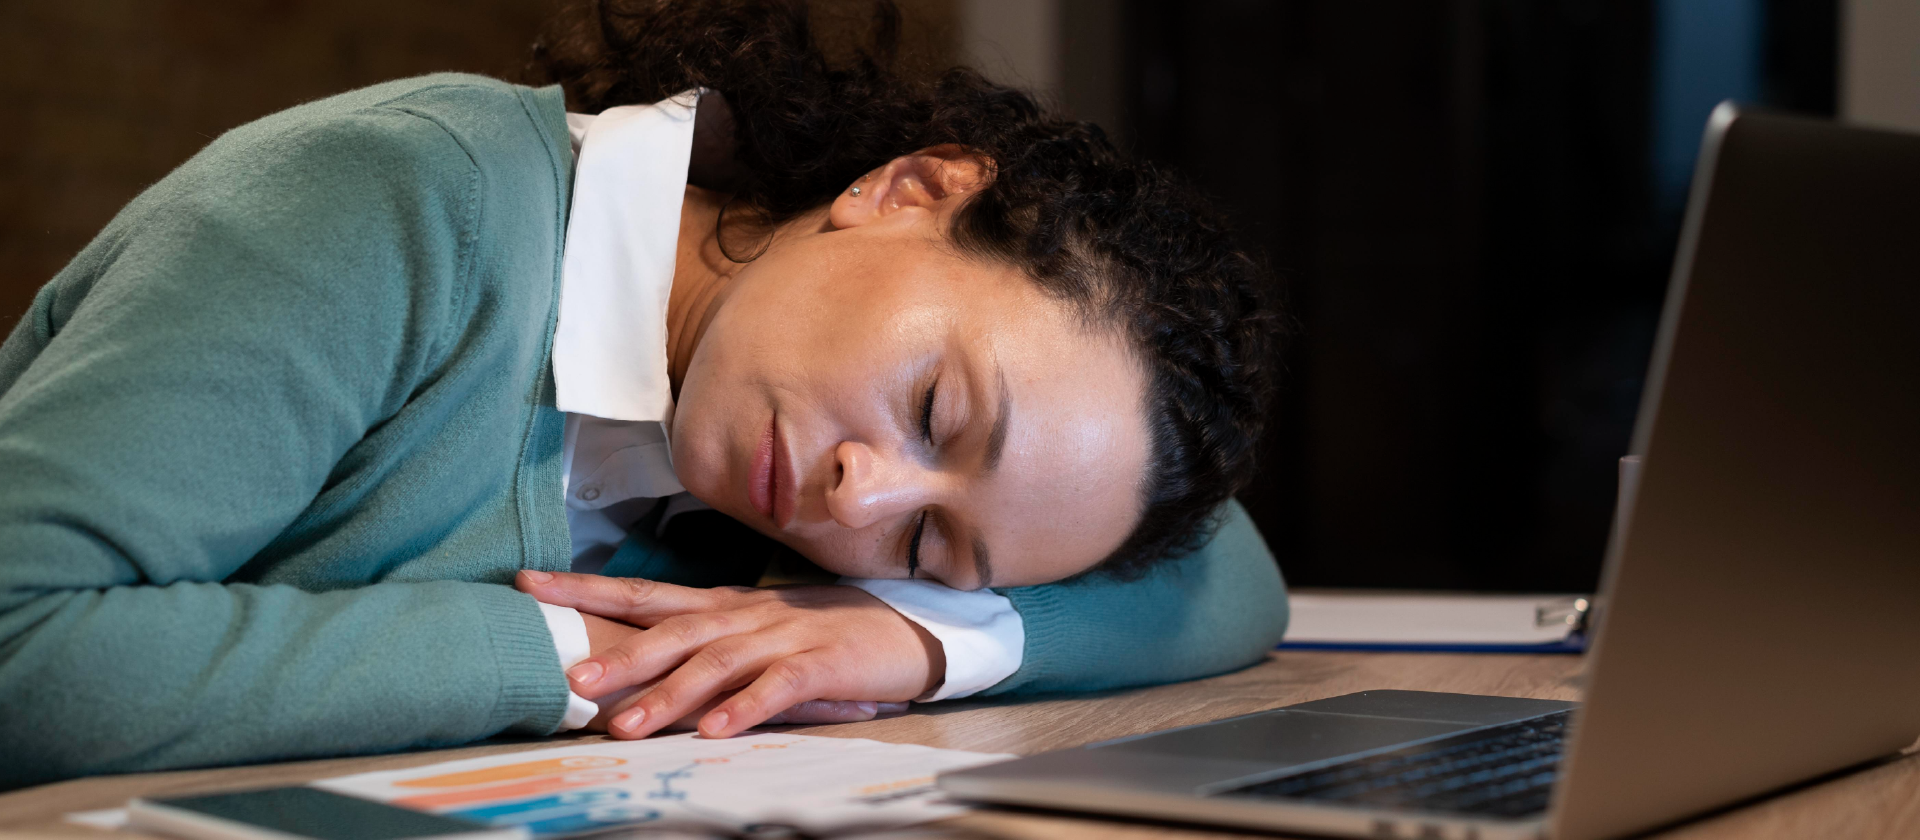 Aprende a distinguir entre el cansancio y el sueño